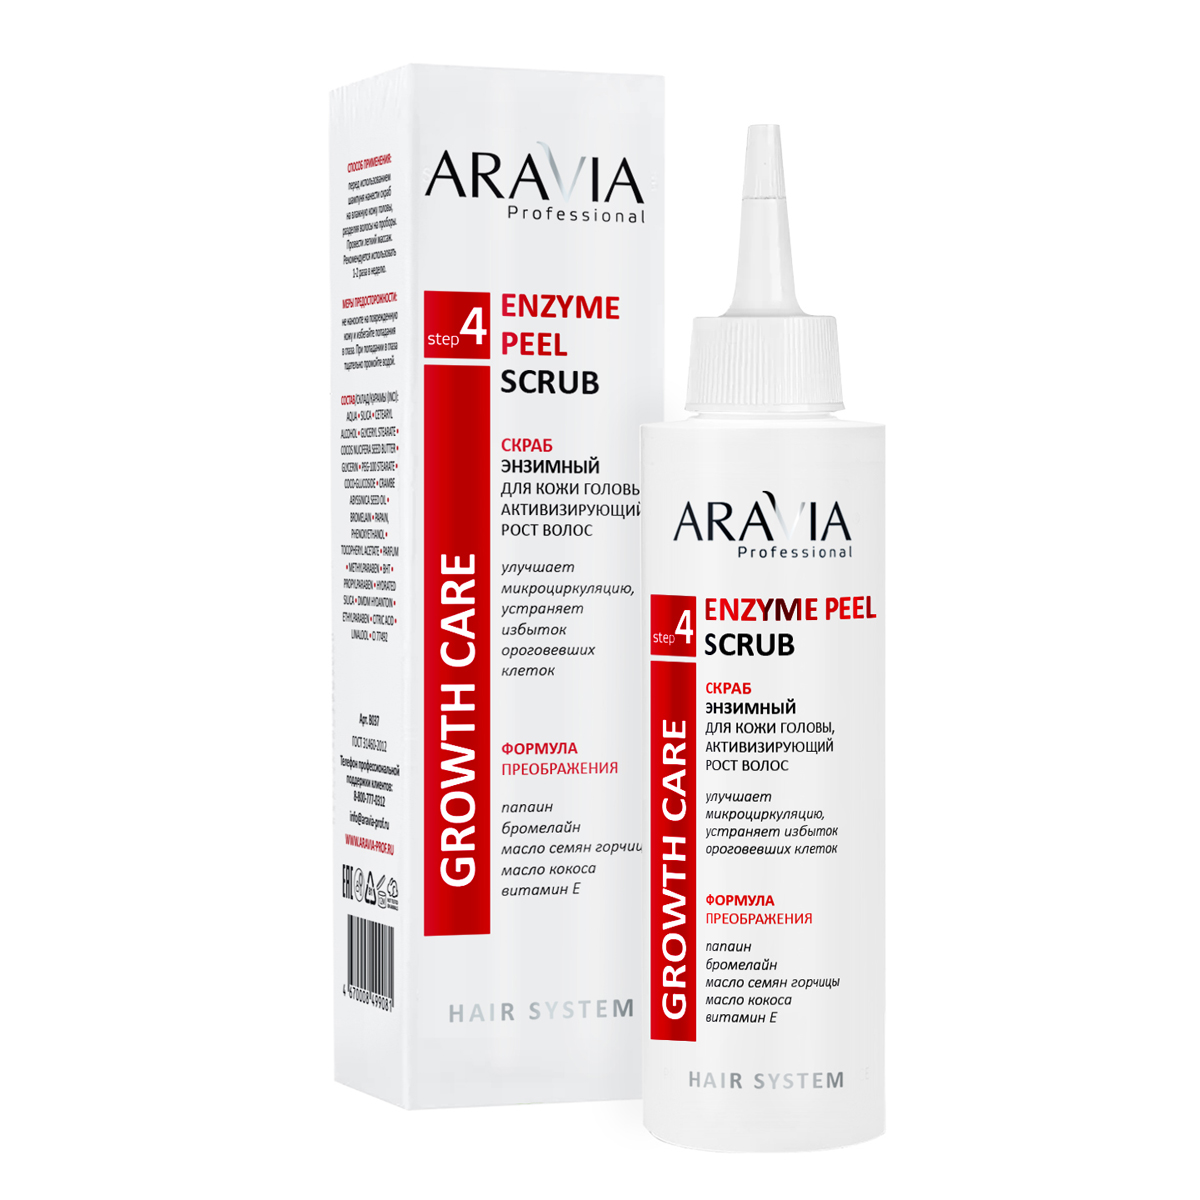 Aravia Professional Скраб энзимный для кожи головы, активизирующий рост волос Enzyme Peel Scrub, 150 мл (Aravia Professional, Уход за волосами)